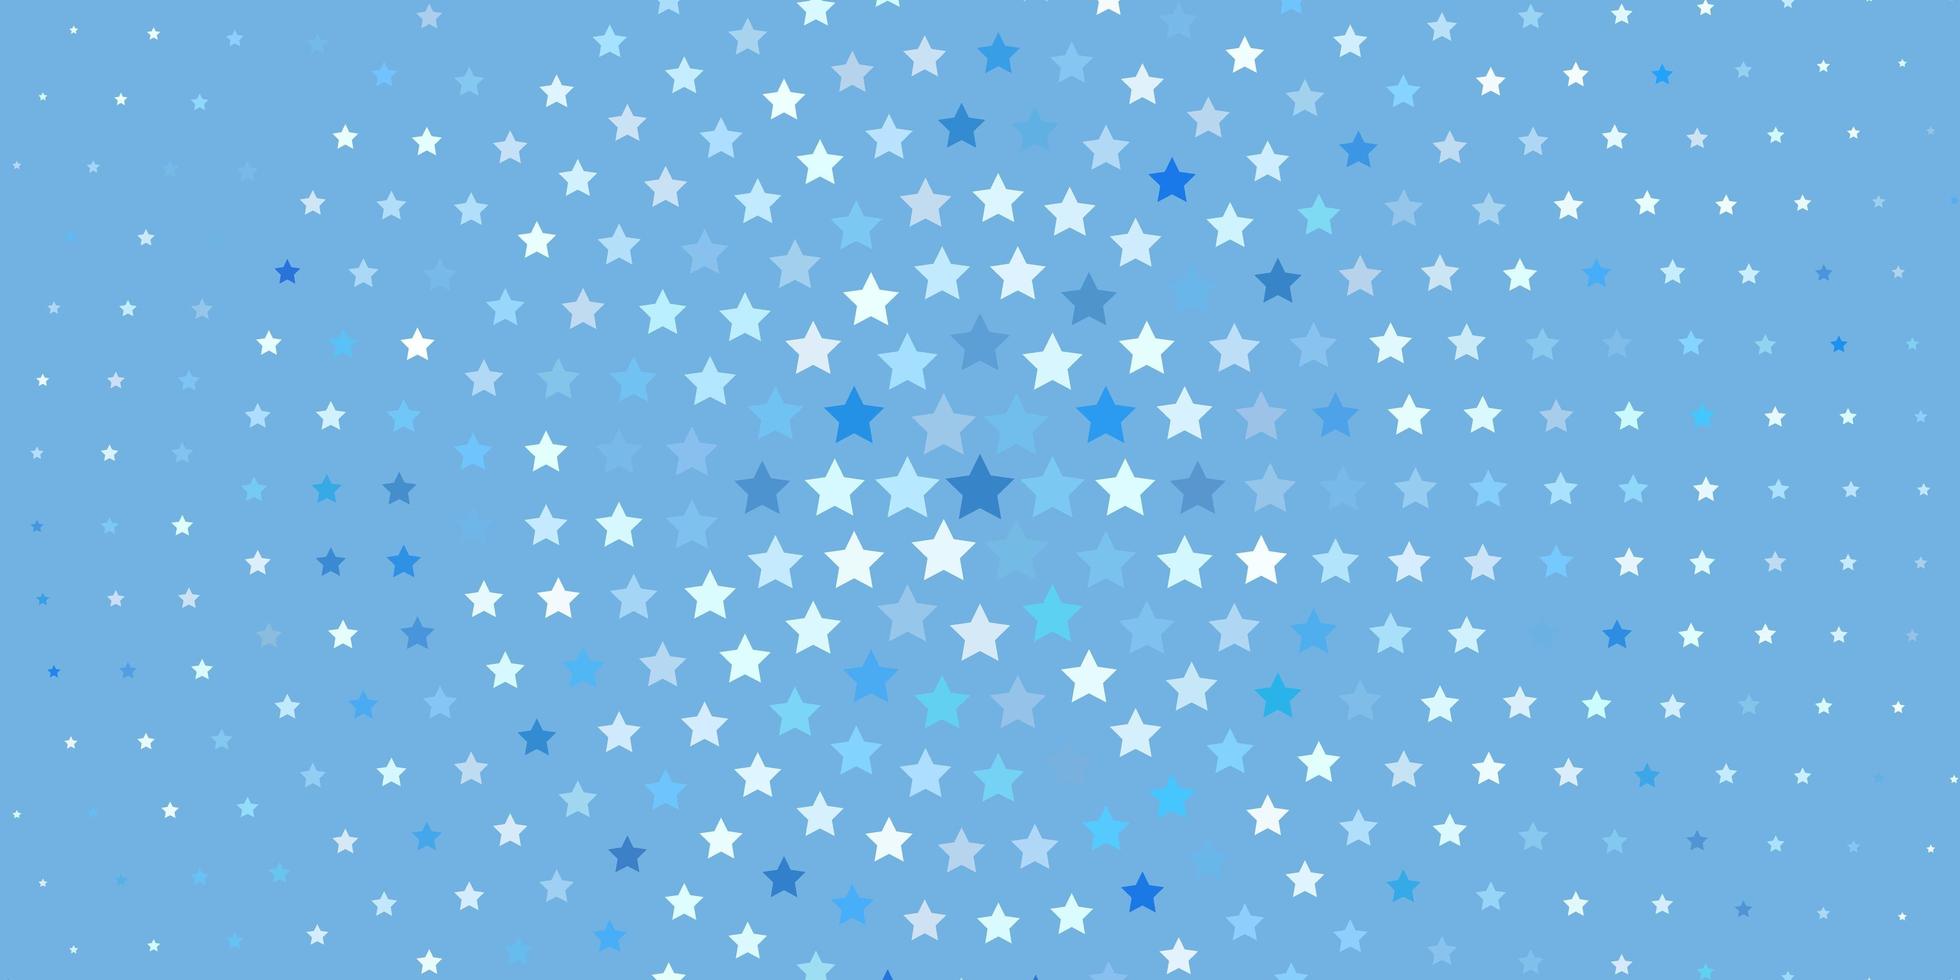 hellblaue Vektorvorlage mit Neonsternen. Unschärfe dekoratives Design im einfachen Stil mit Sternen. Muster für Neujahrsanzeige, Broschüren. vektor